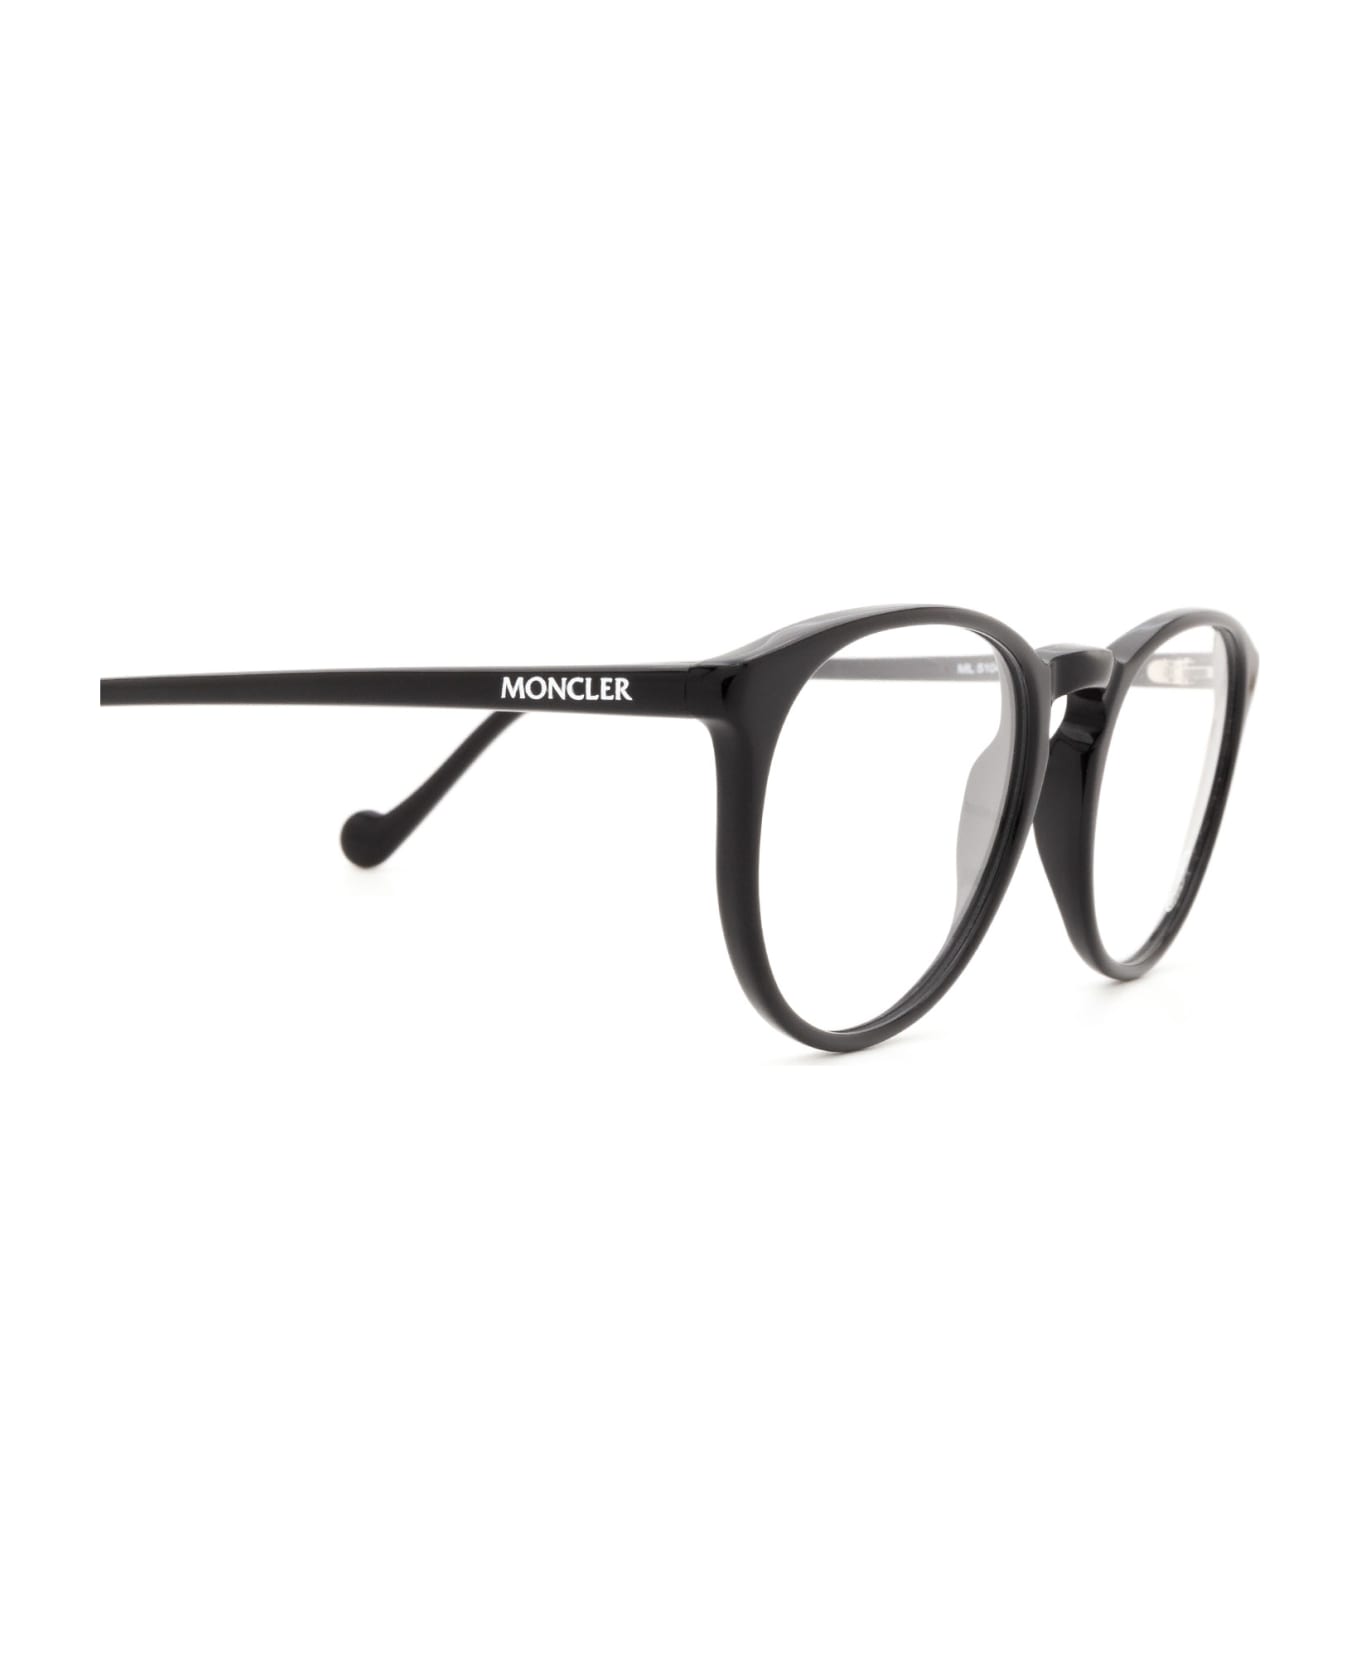 Moncler Eyewear Ml5104 Shiny Black Glasses - Shiny Black アイウェア